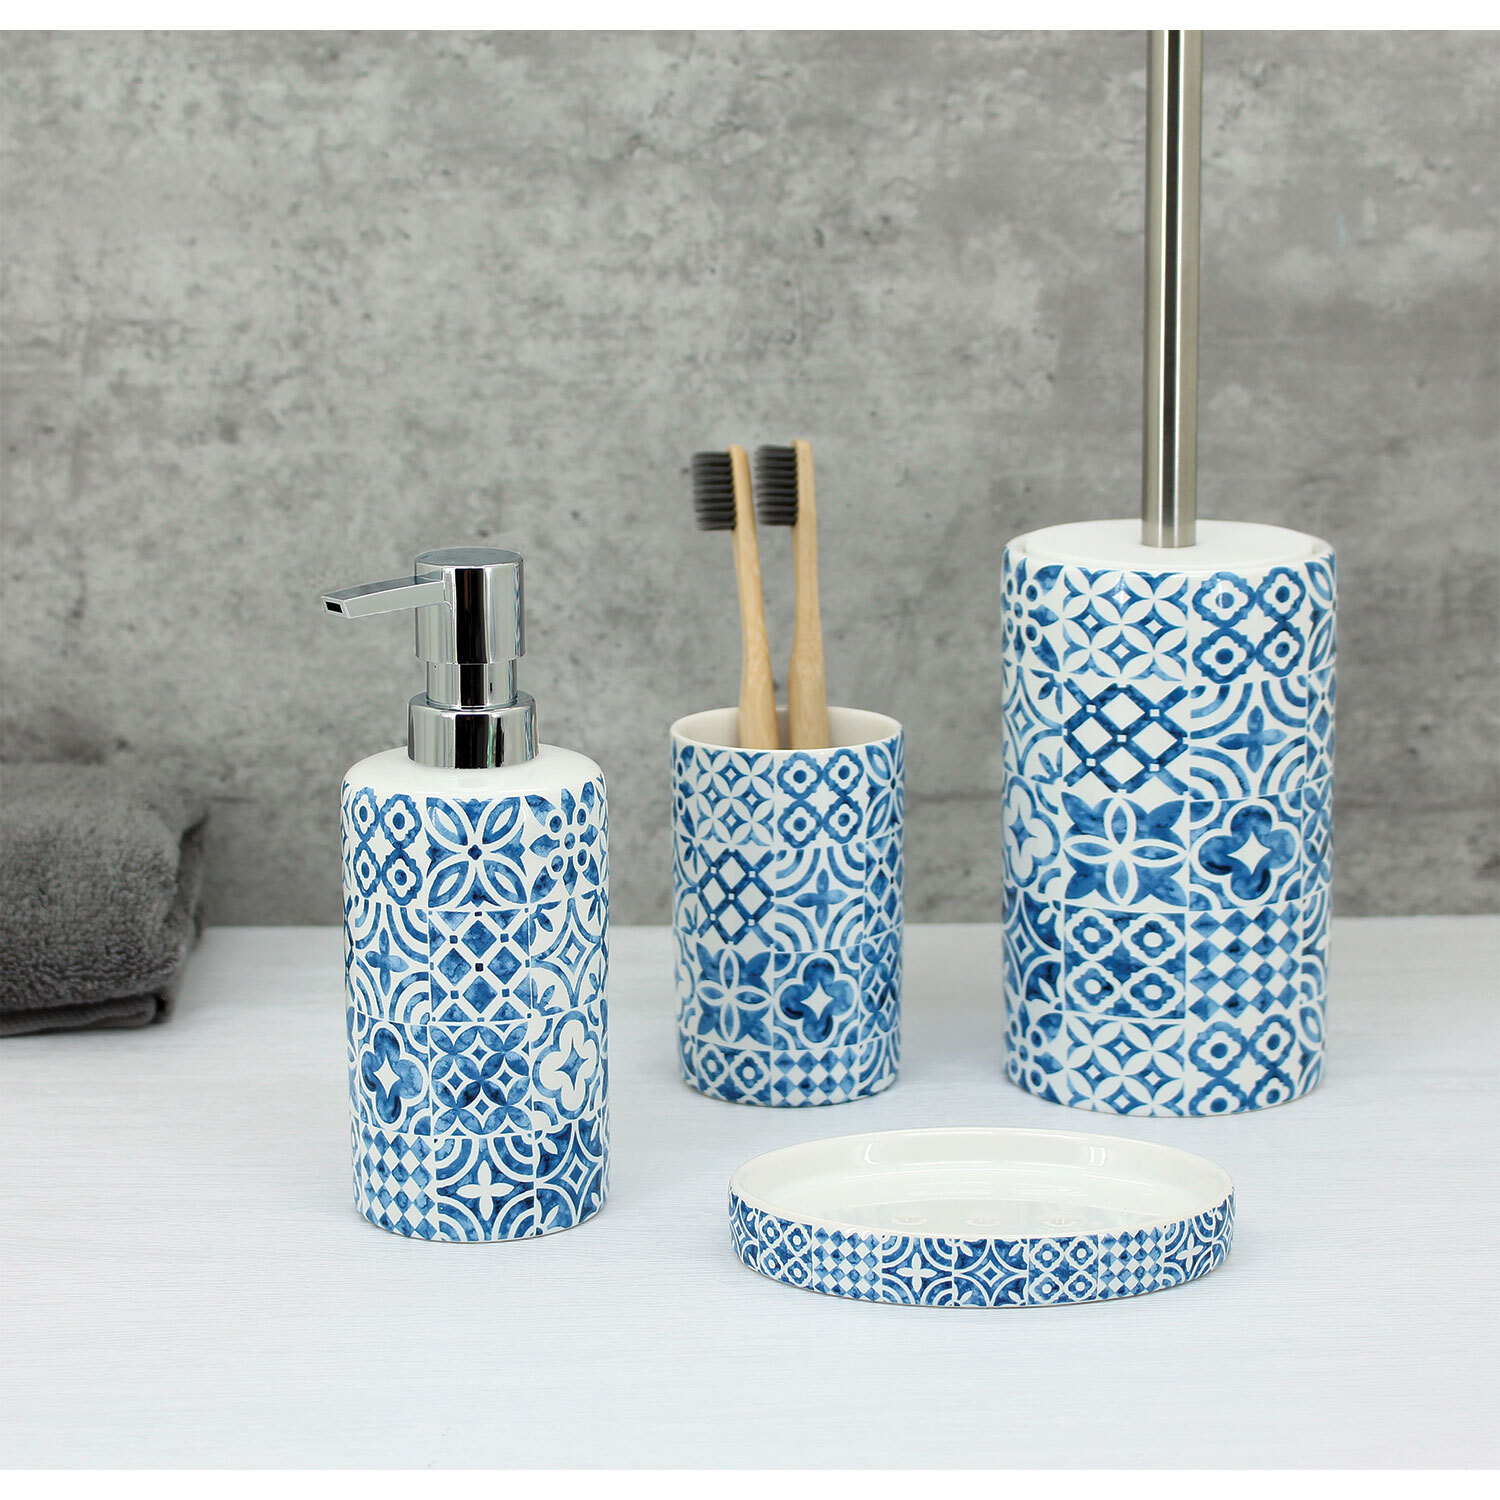 Santorini White and Blue Soap Dispenser Image 2